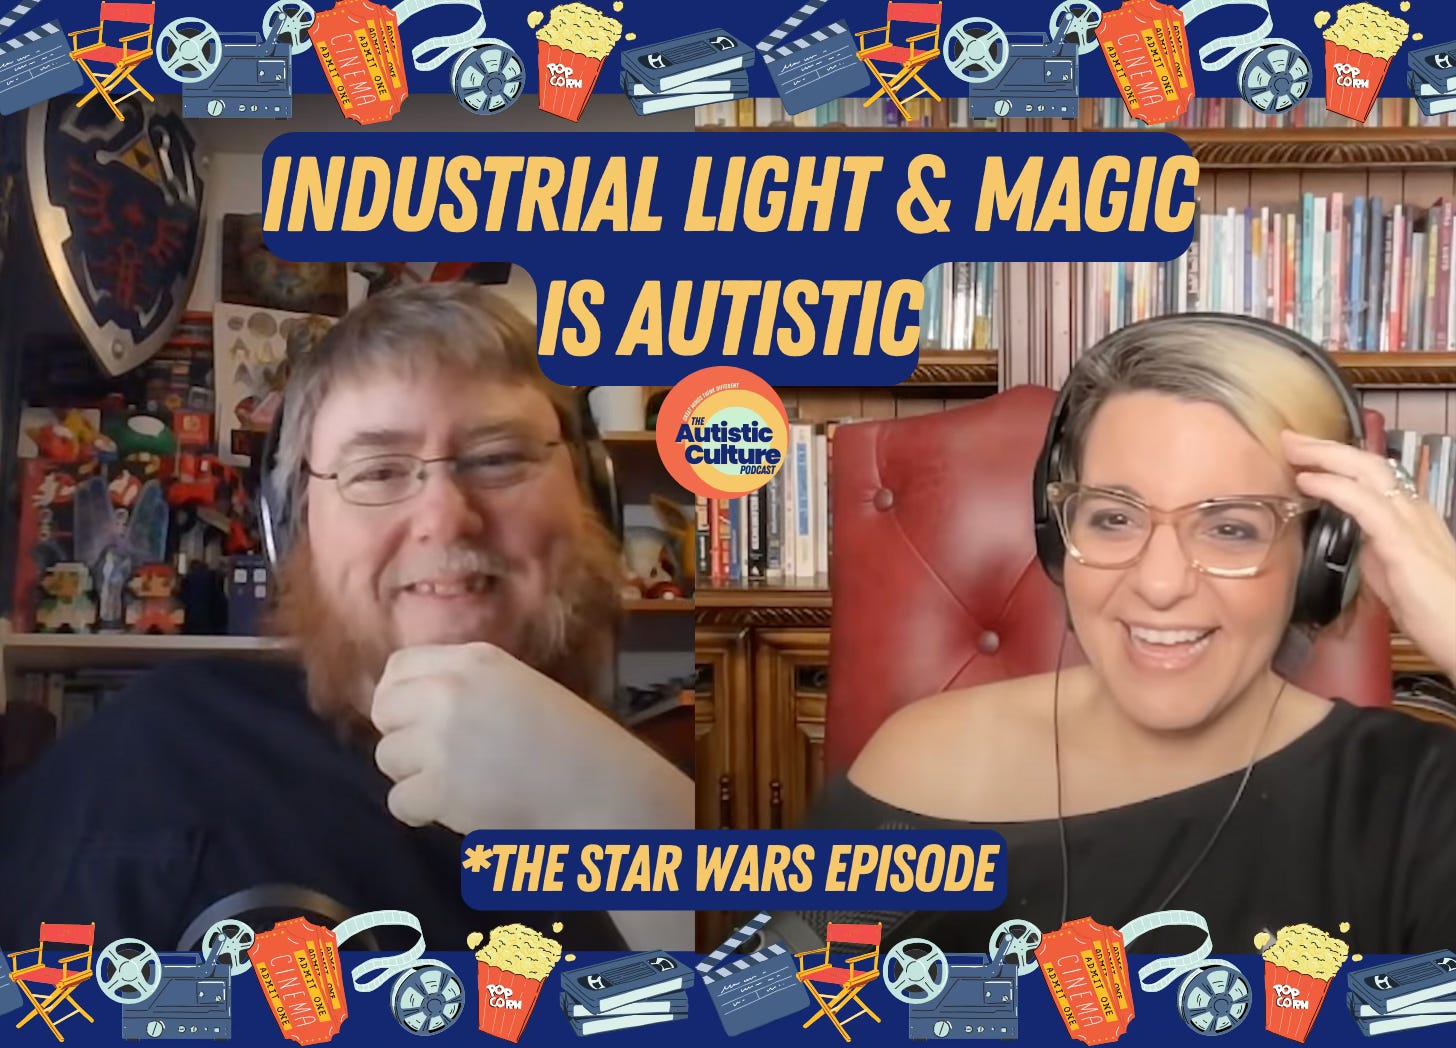 Listen to Autistic podcast hosts discuss: Industrial Light & Magic is Autistic | Autistic Activities | Autistic Celebrities